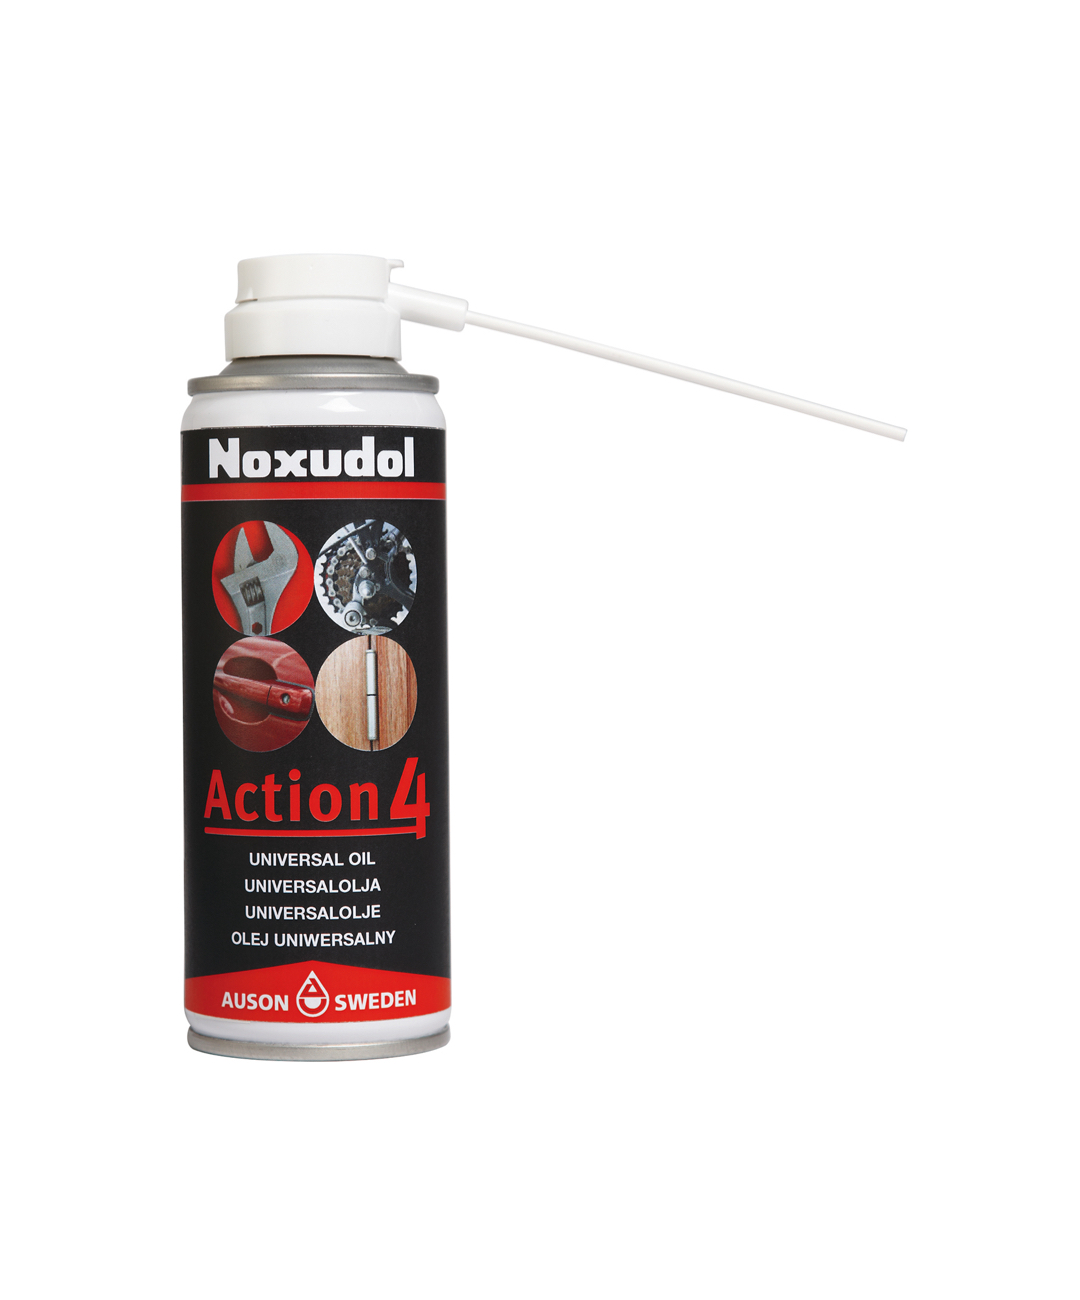 Noxudol Action 4